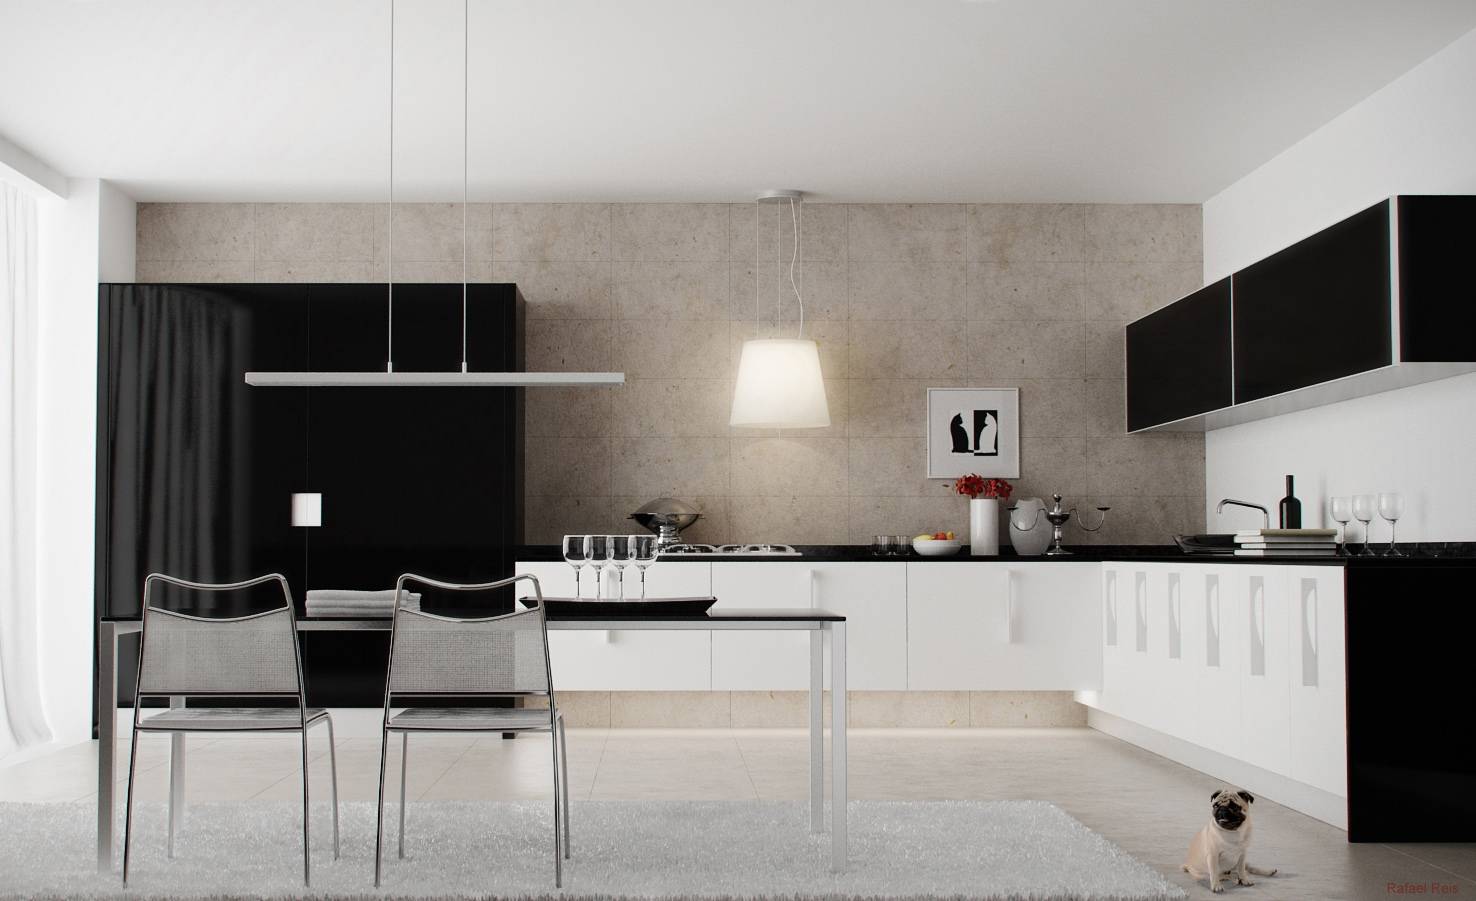 Обои под белую кухню: какие подобрать по цвету, дизайну и стилевому направлению | дизайн и фото